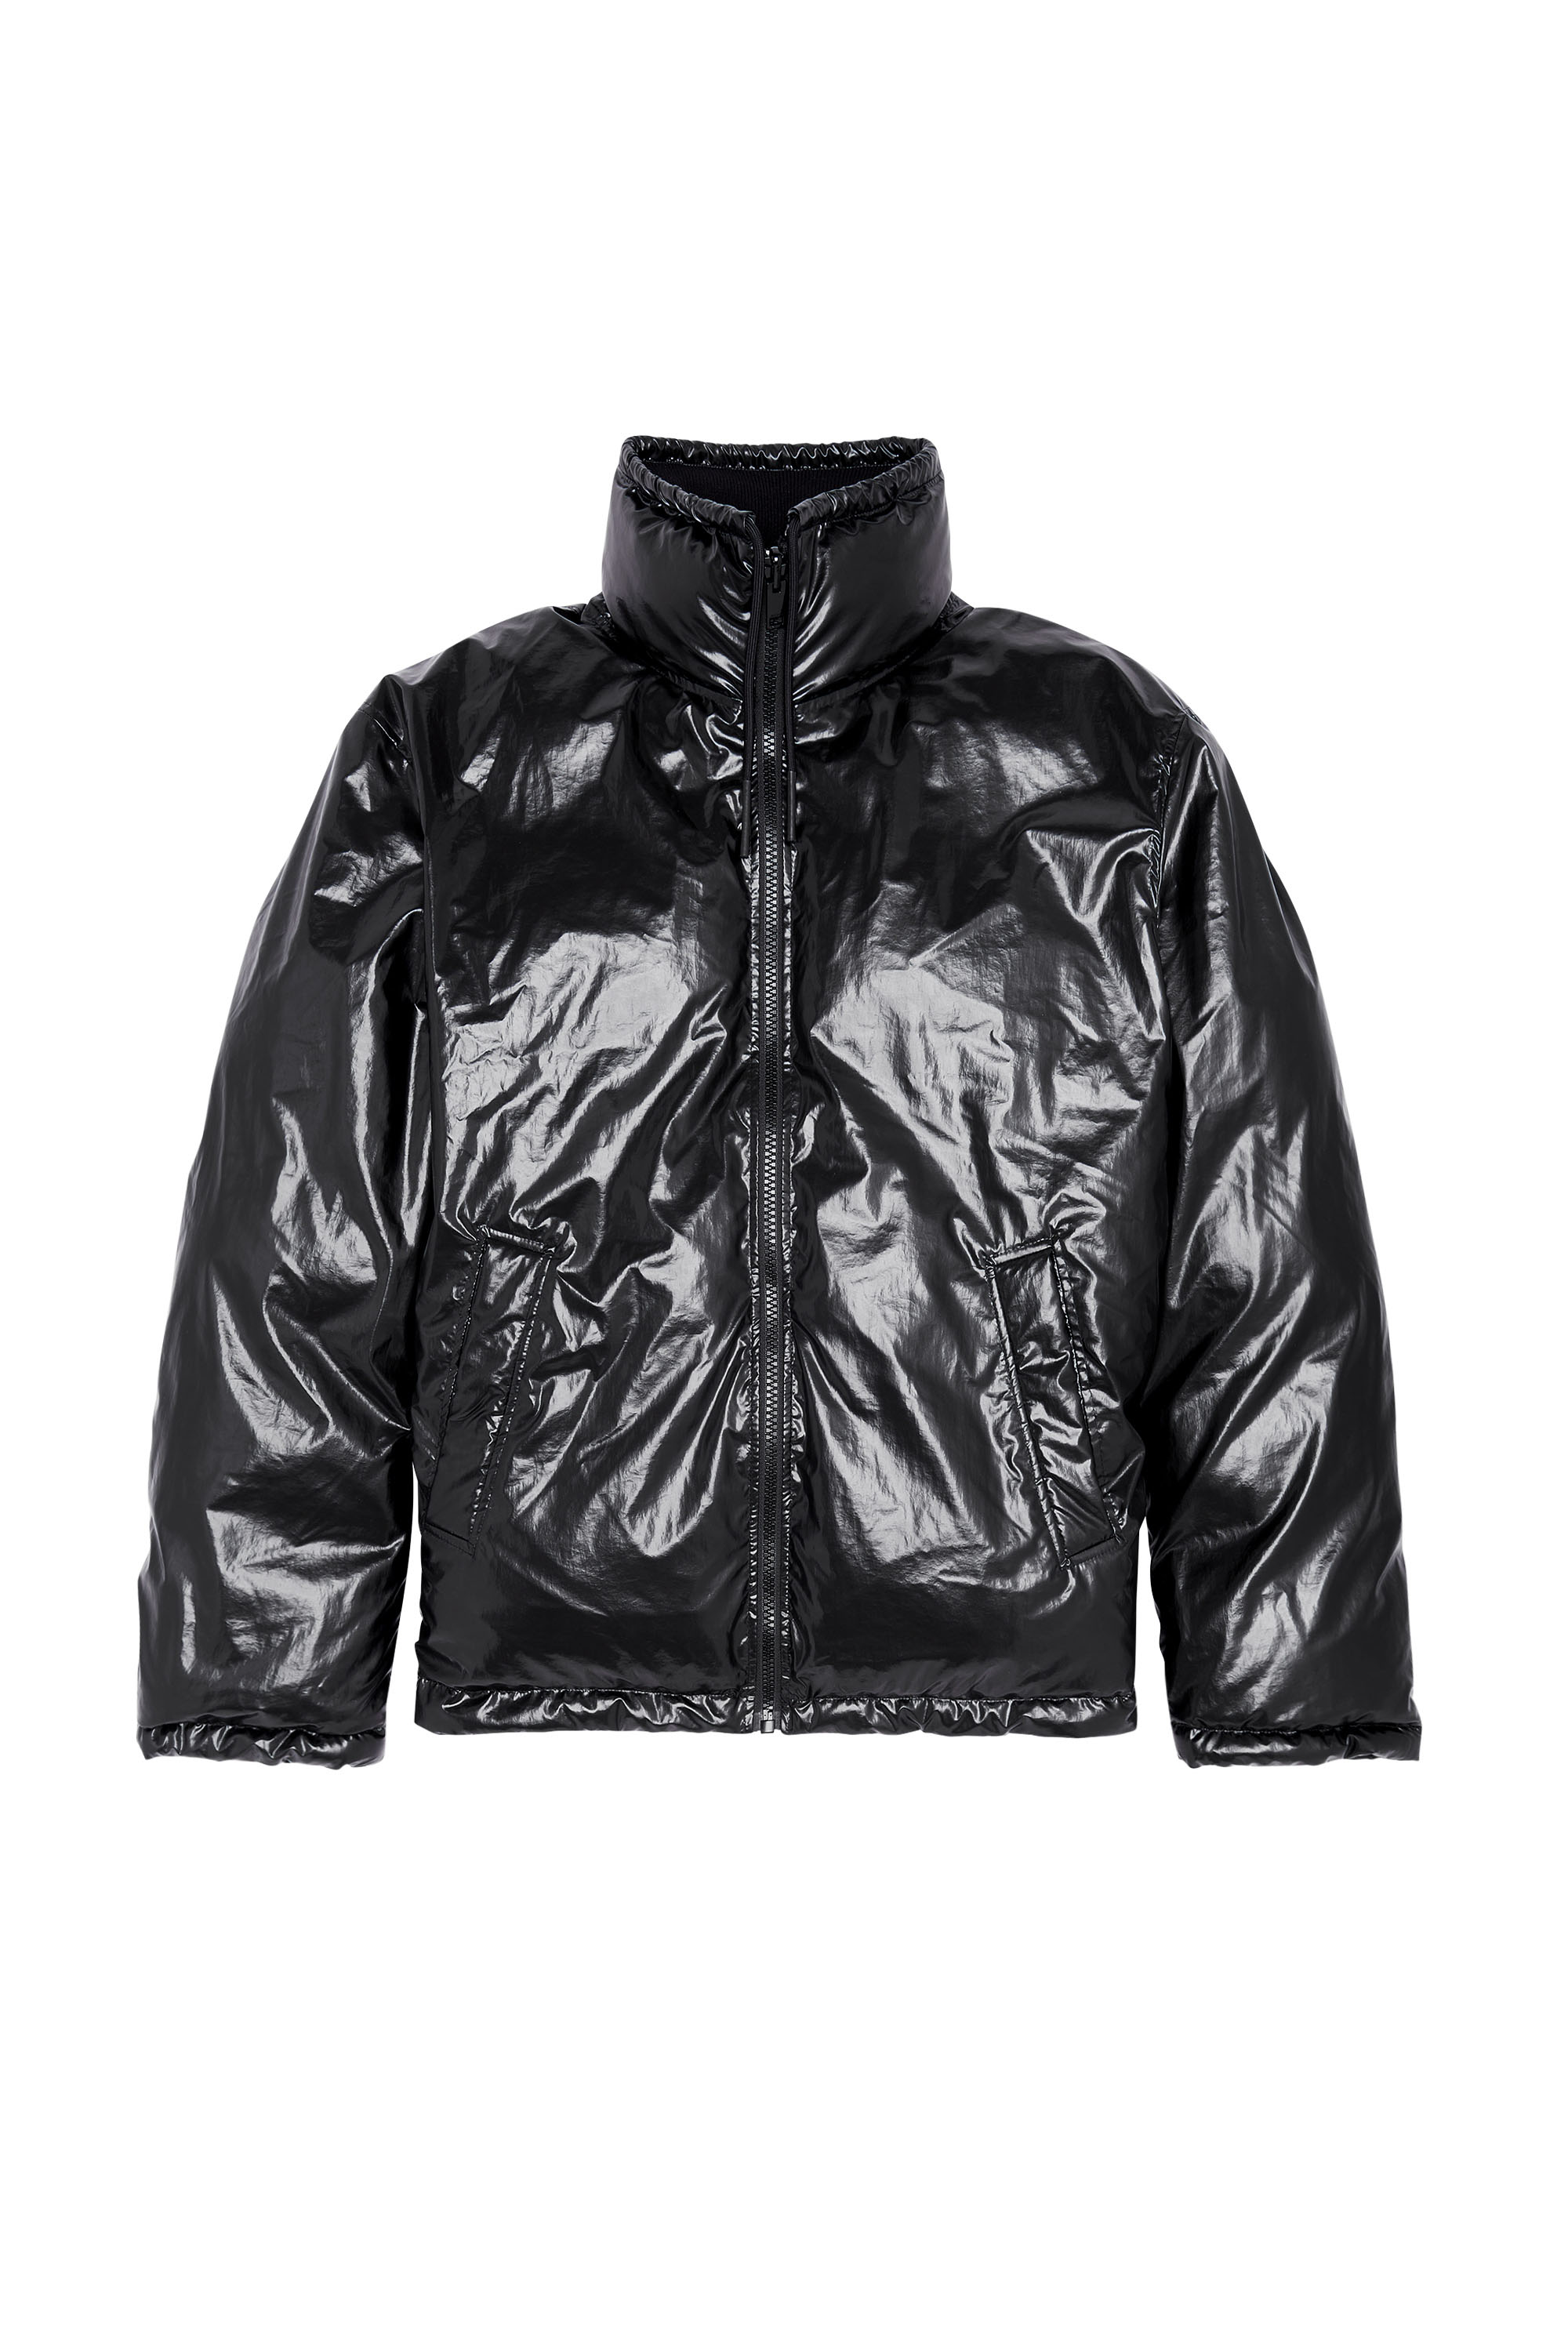 Men's Jackets: Leather, Denim, Bomber, Parka | Diesel®